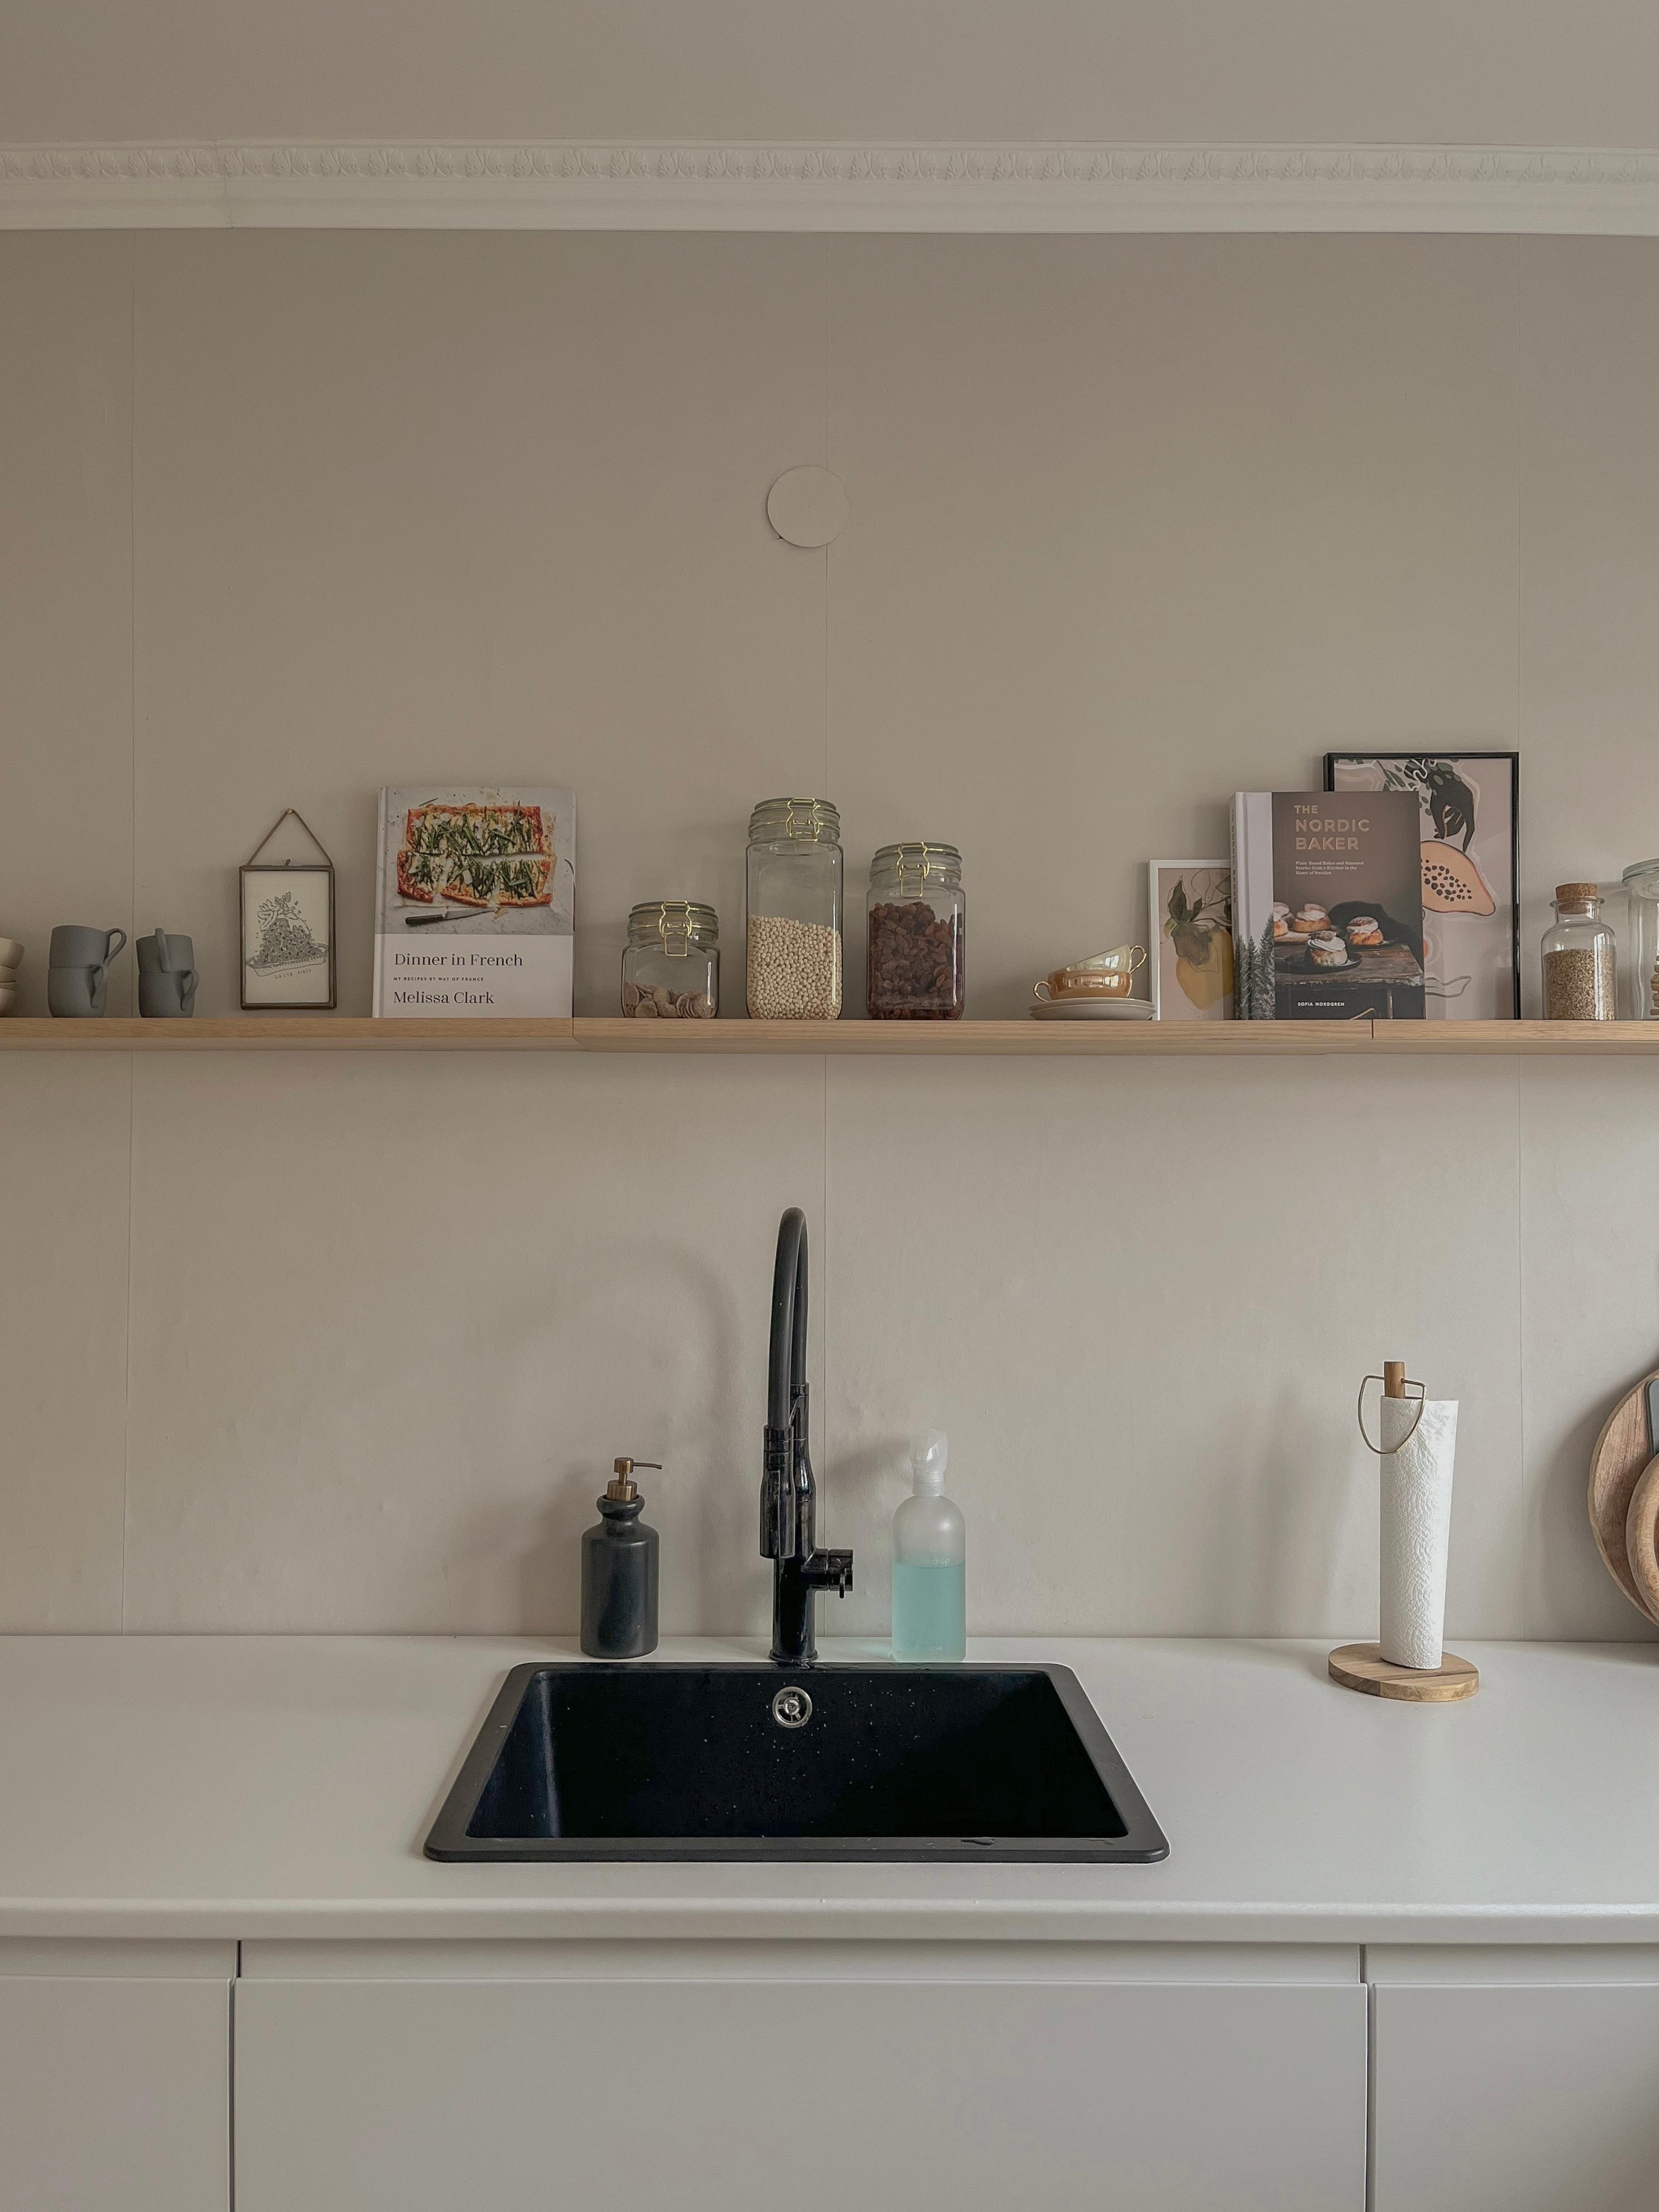 Küchendetails #Ikea #Metod #küche #weiß #regal #küchenregal #kochbücher #schwarze #spüle #schalen #tassen #weißeküche